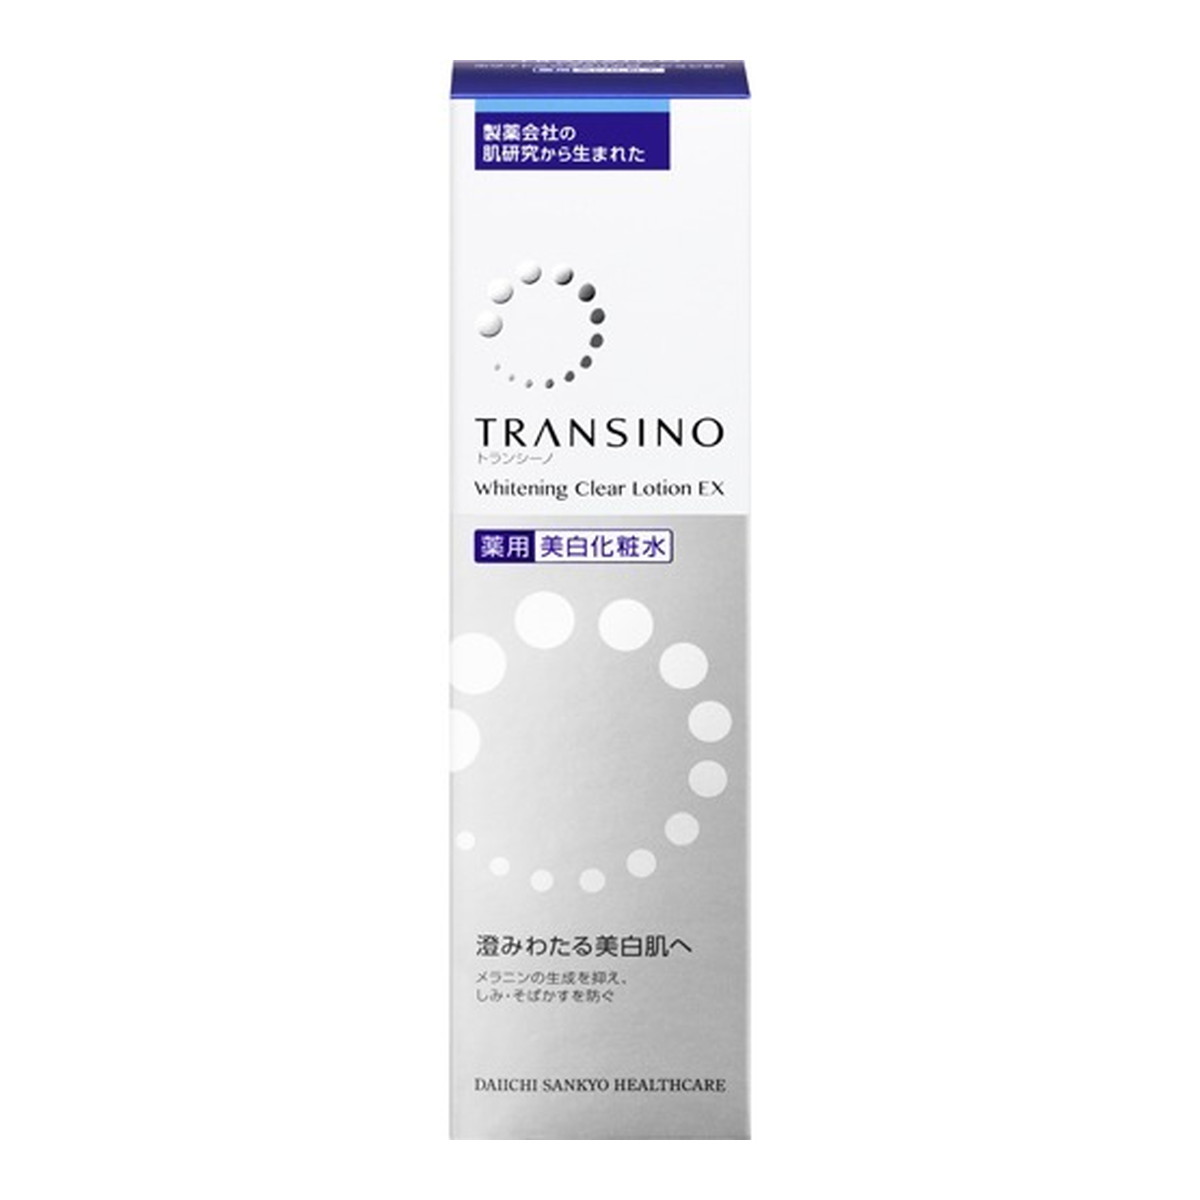 第一三共ヘルスケア トランシーノ 薬用 美白化粧水 ホワイトニングクリアローションEX 150mL 医薬部外品 化粧水